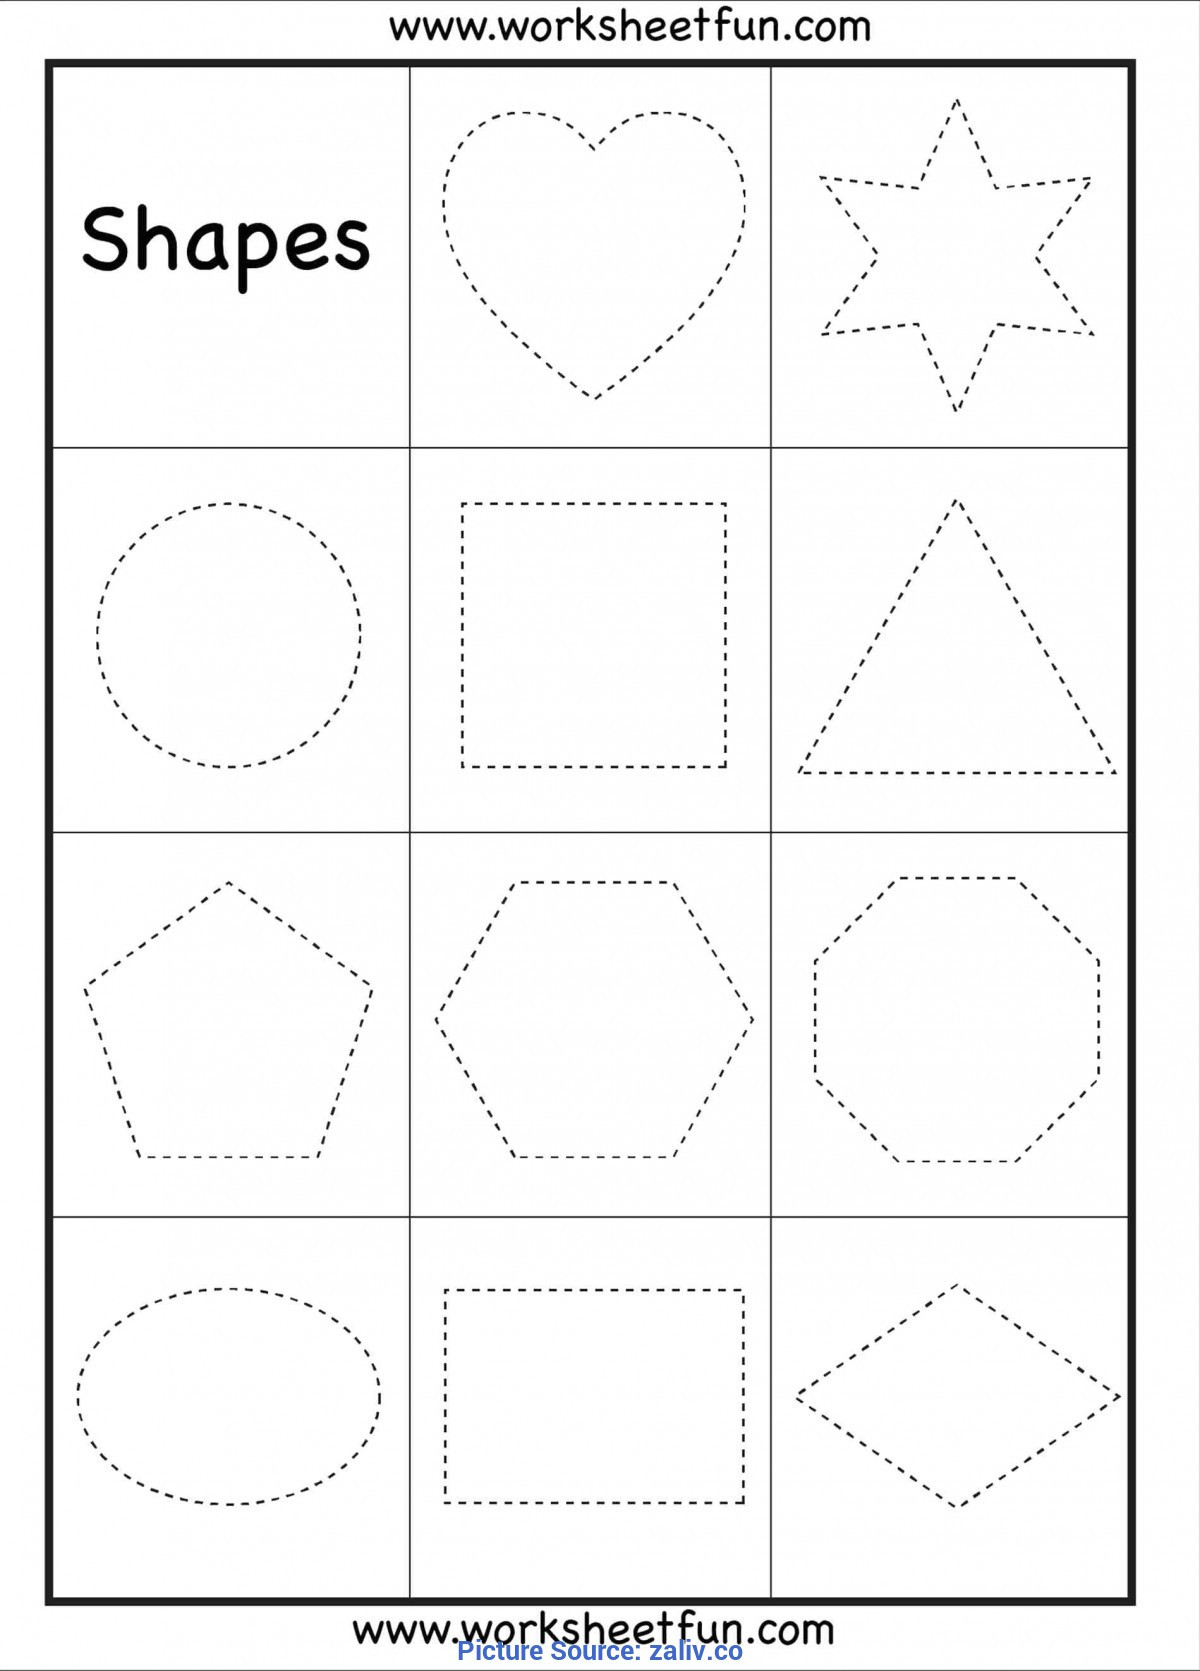 3d Shapes Worksheet Kindergarten 3d Shapes Worksheet for Preschool Clover Hatunisi